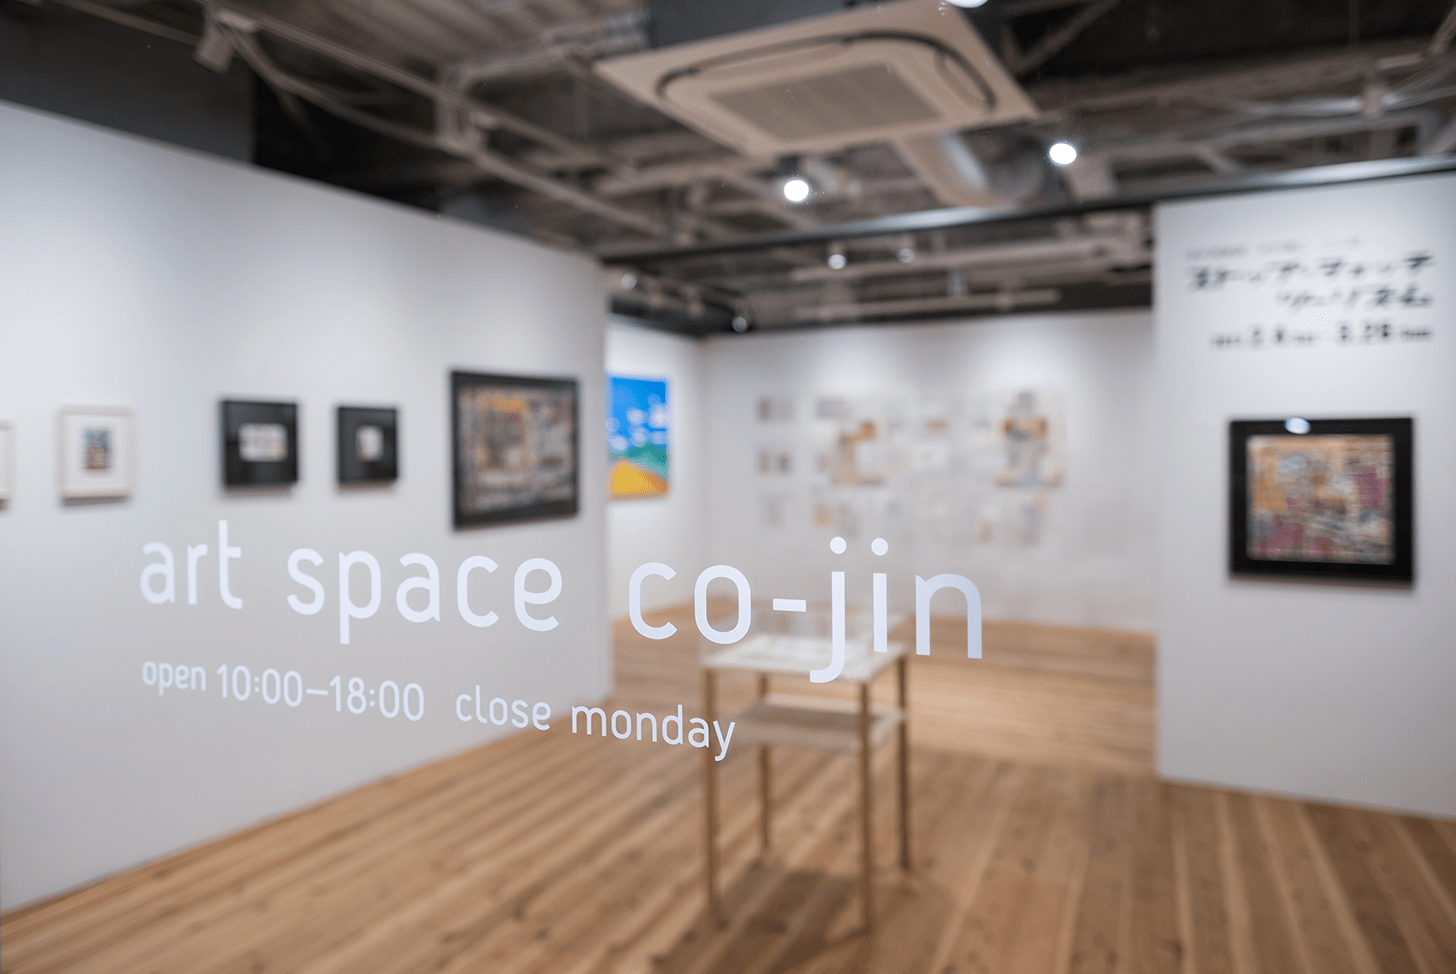 art space co-jin